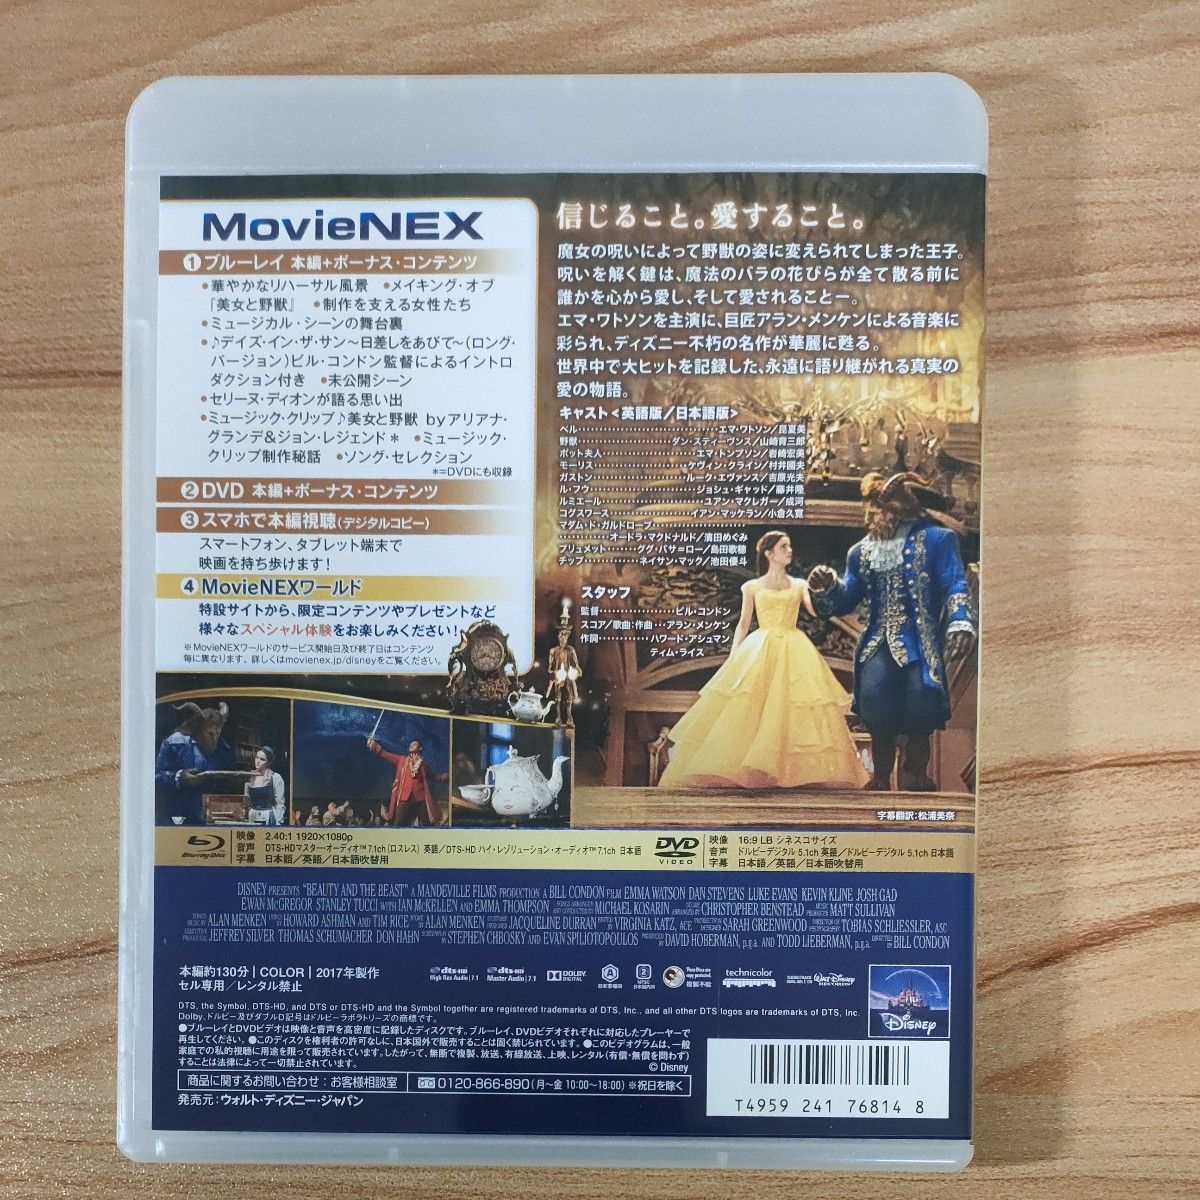 美女と野獣 MovieNEX ブルーレイ+DVDセット エマワトソン